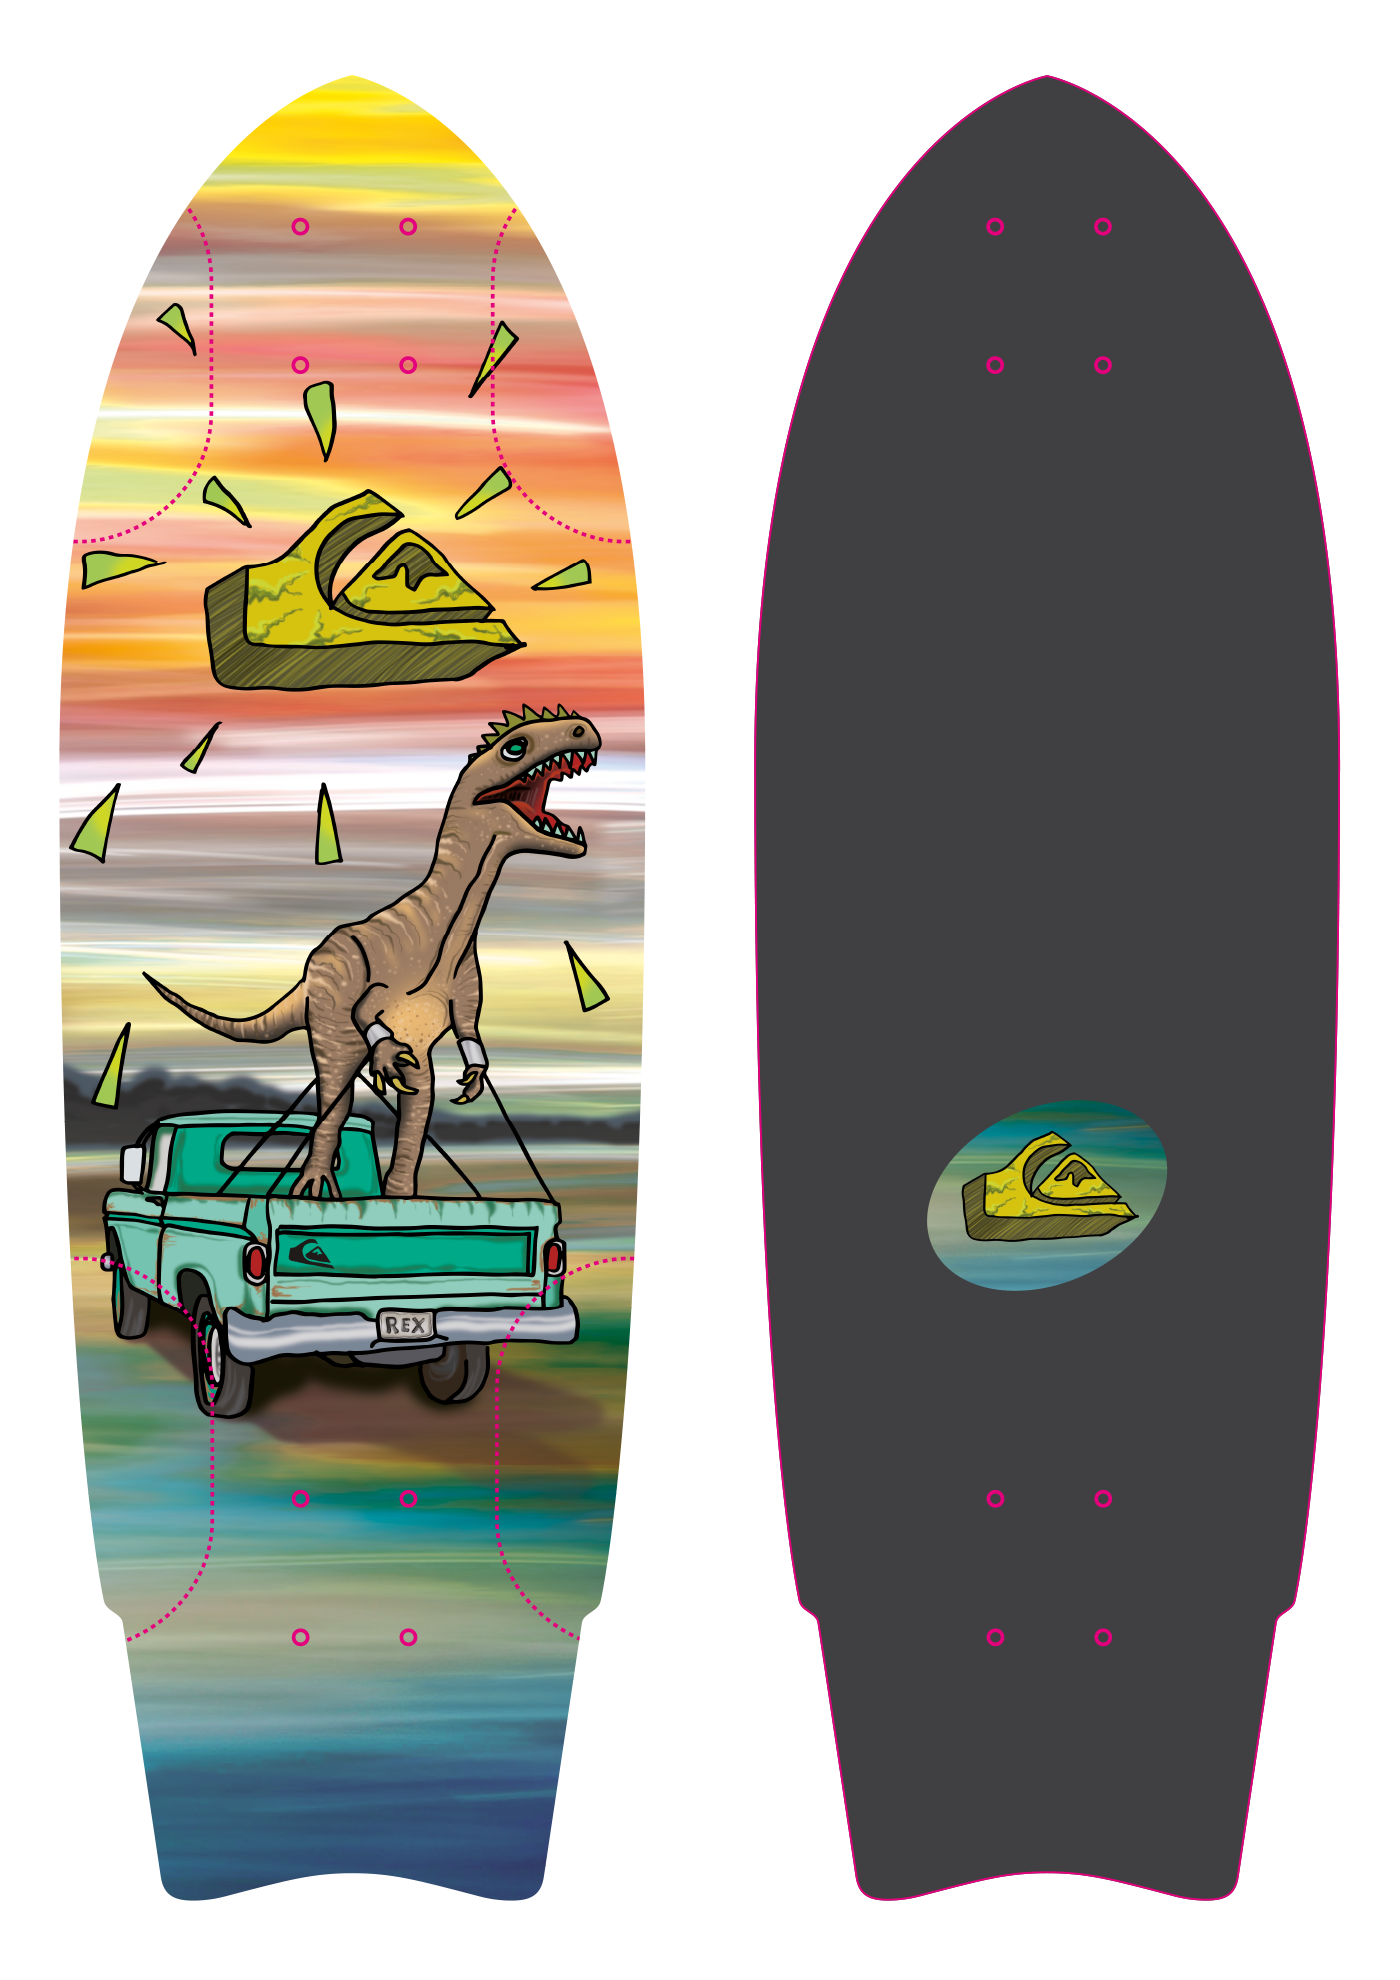 graphic design art skateboard branding  product Surf skate